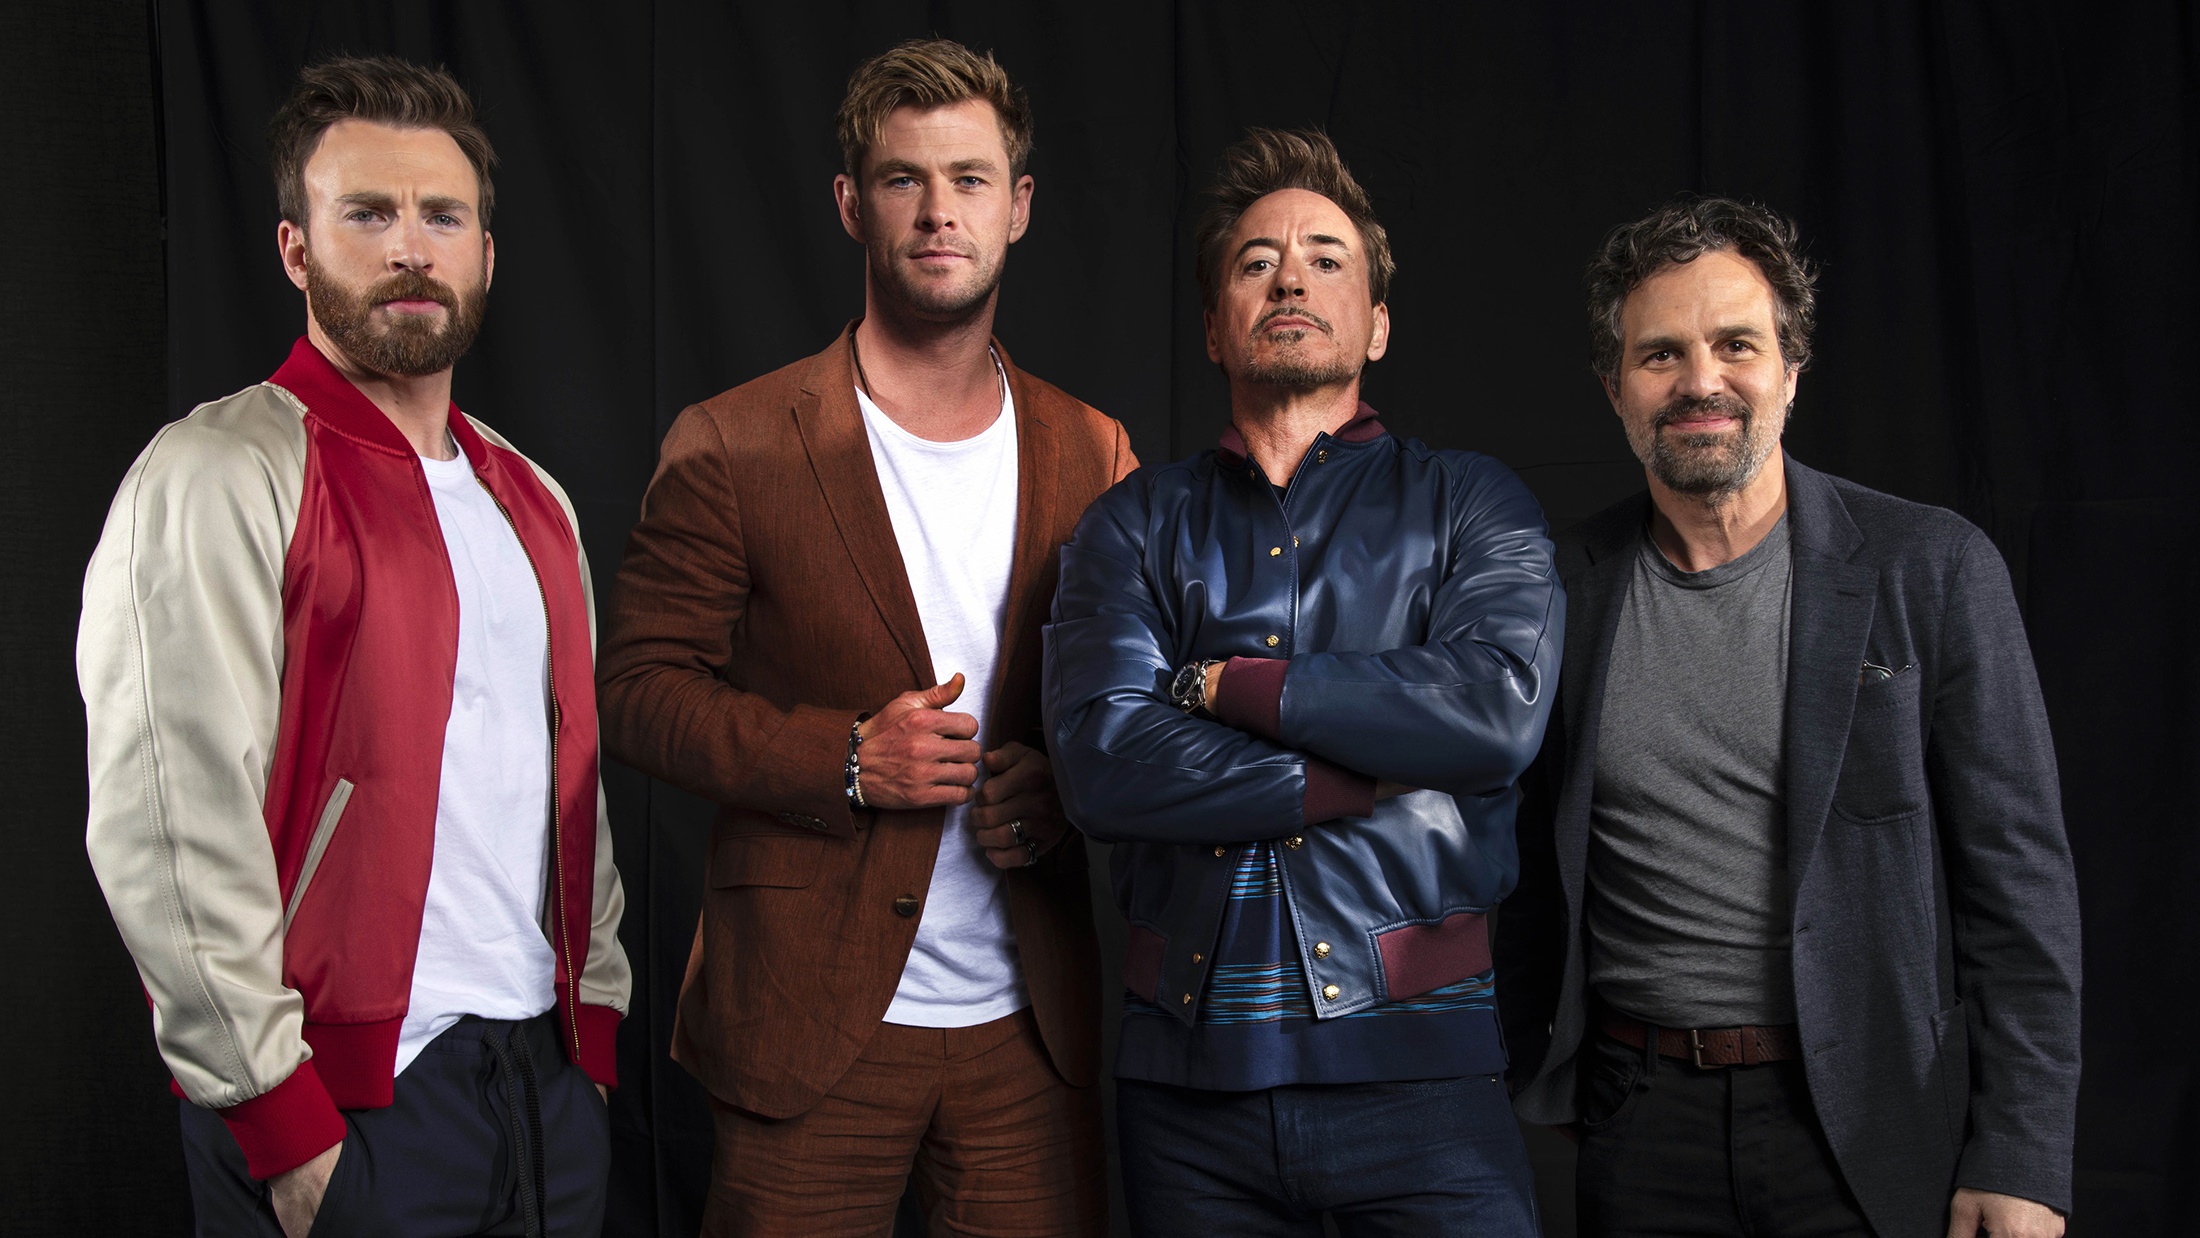 Descarga gratuita de fondo de pantalla para móvil de Robert Downey Jr, Chris Evans, Celebridades, Actor, Chris Hemsworth, Marca Ruffalo.